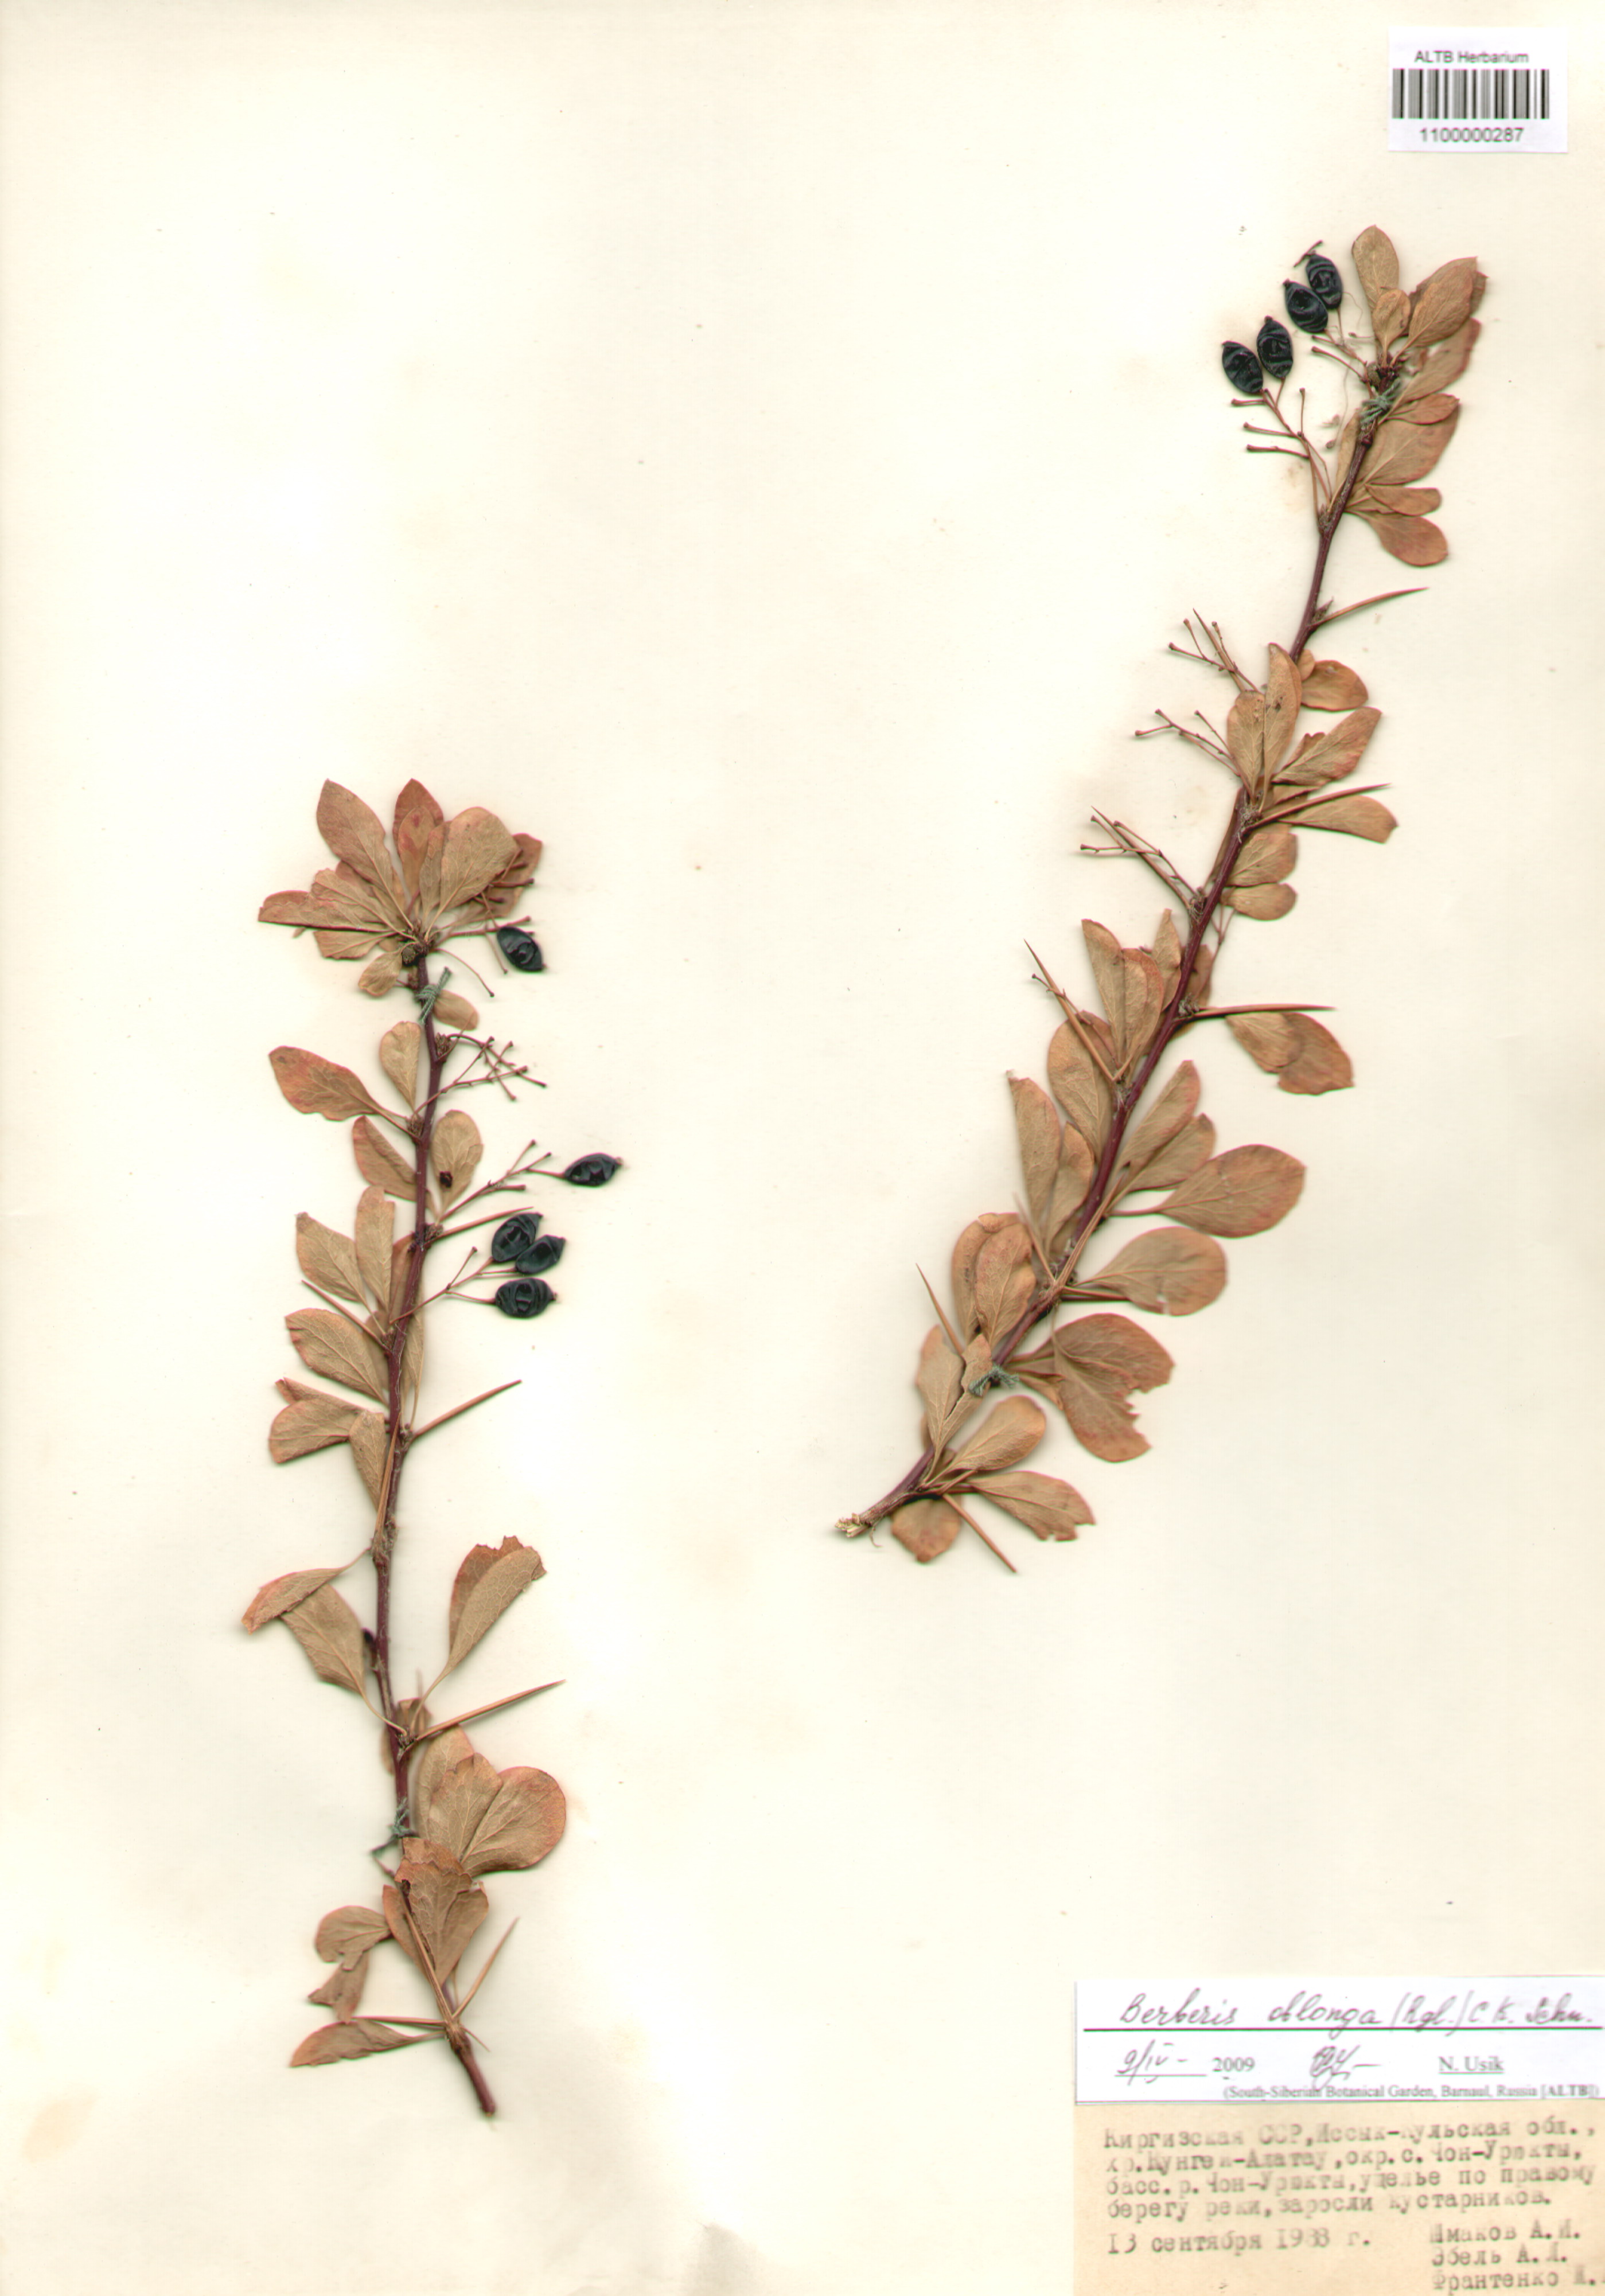 Berberidaceae,Berberis oblonga (Rgl.) C.K. Schn.